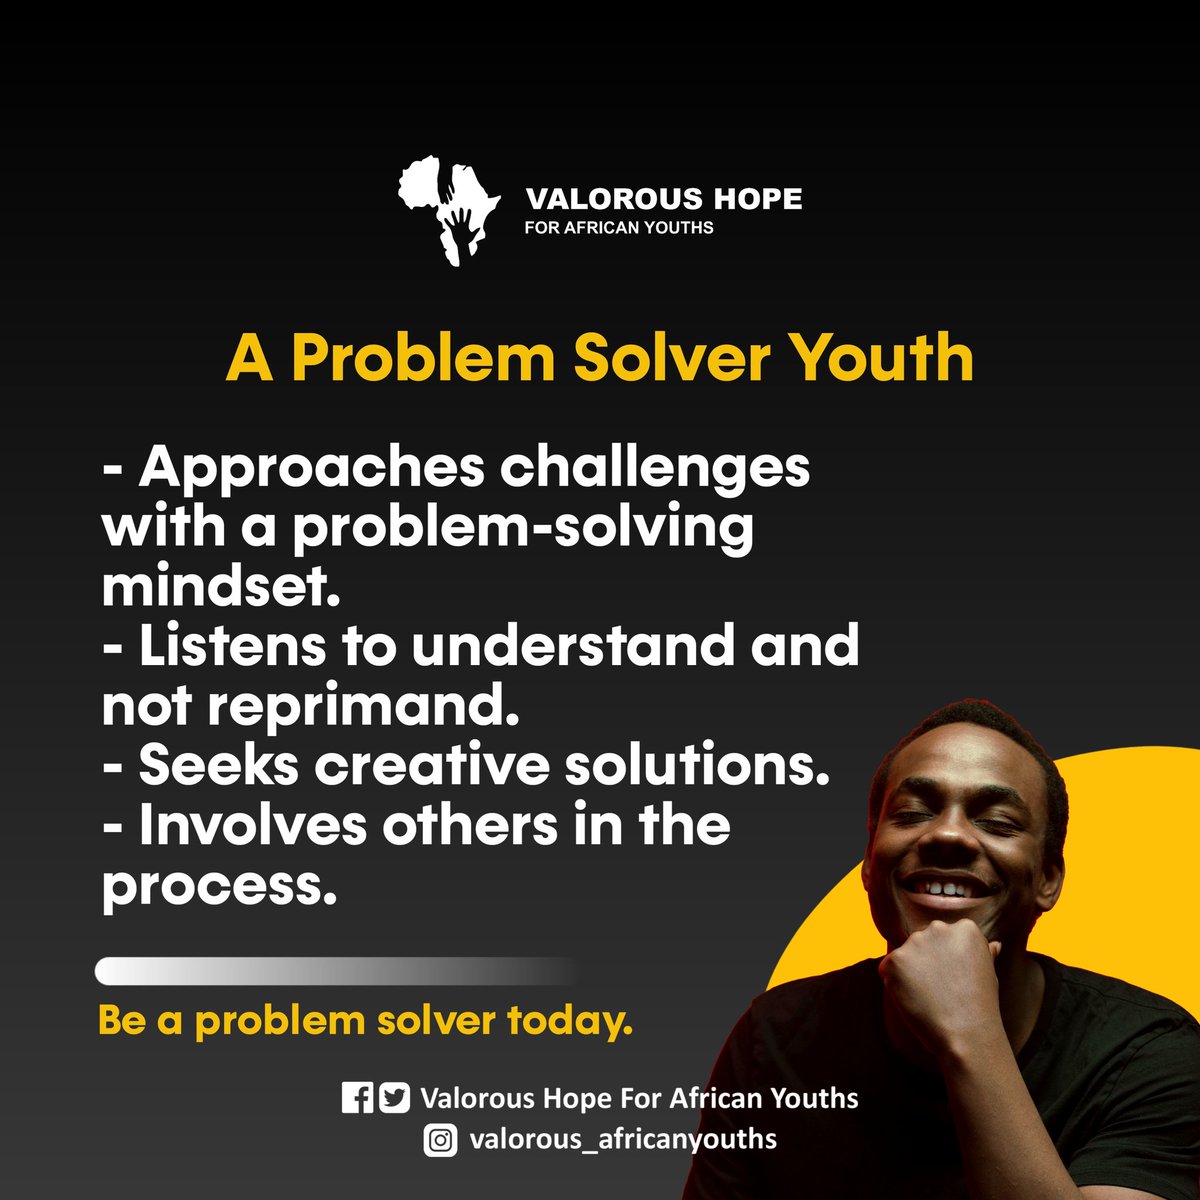 Are you a problem solver youth? 

#trending #africa #nigeria #africanyouth #valoroushopeforafricanyouth #viral #ecowas #un #ngos #newafrica #ngo #africaisthefuture